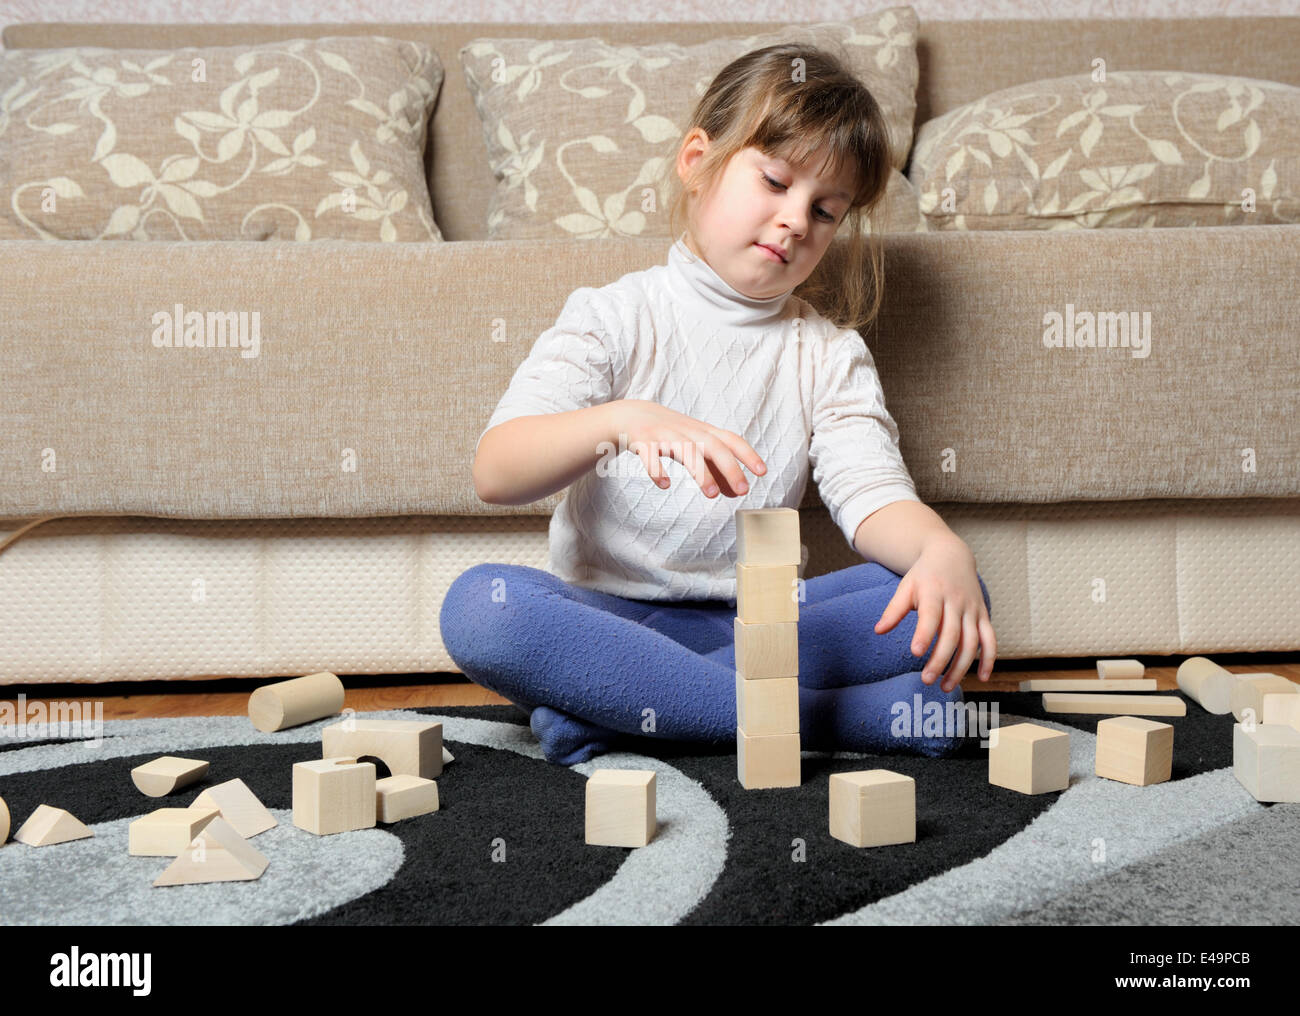 Das kleine Mädchen spielt Holzspielzeug Würfel Stockfoto